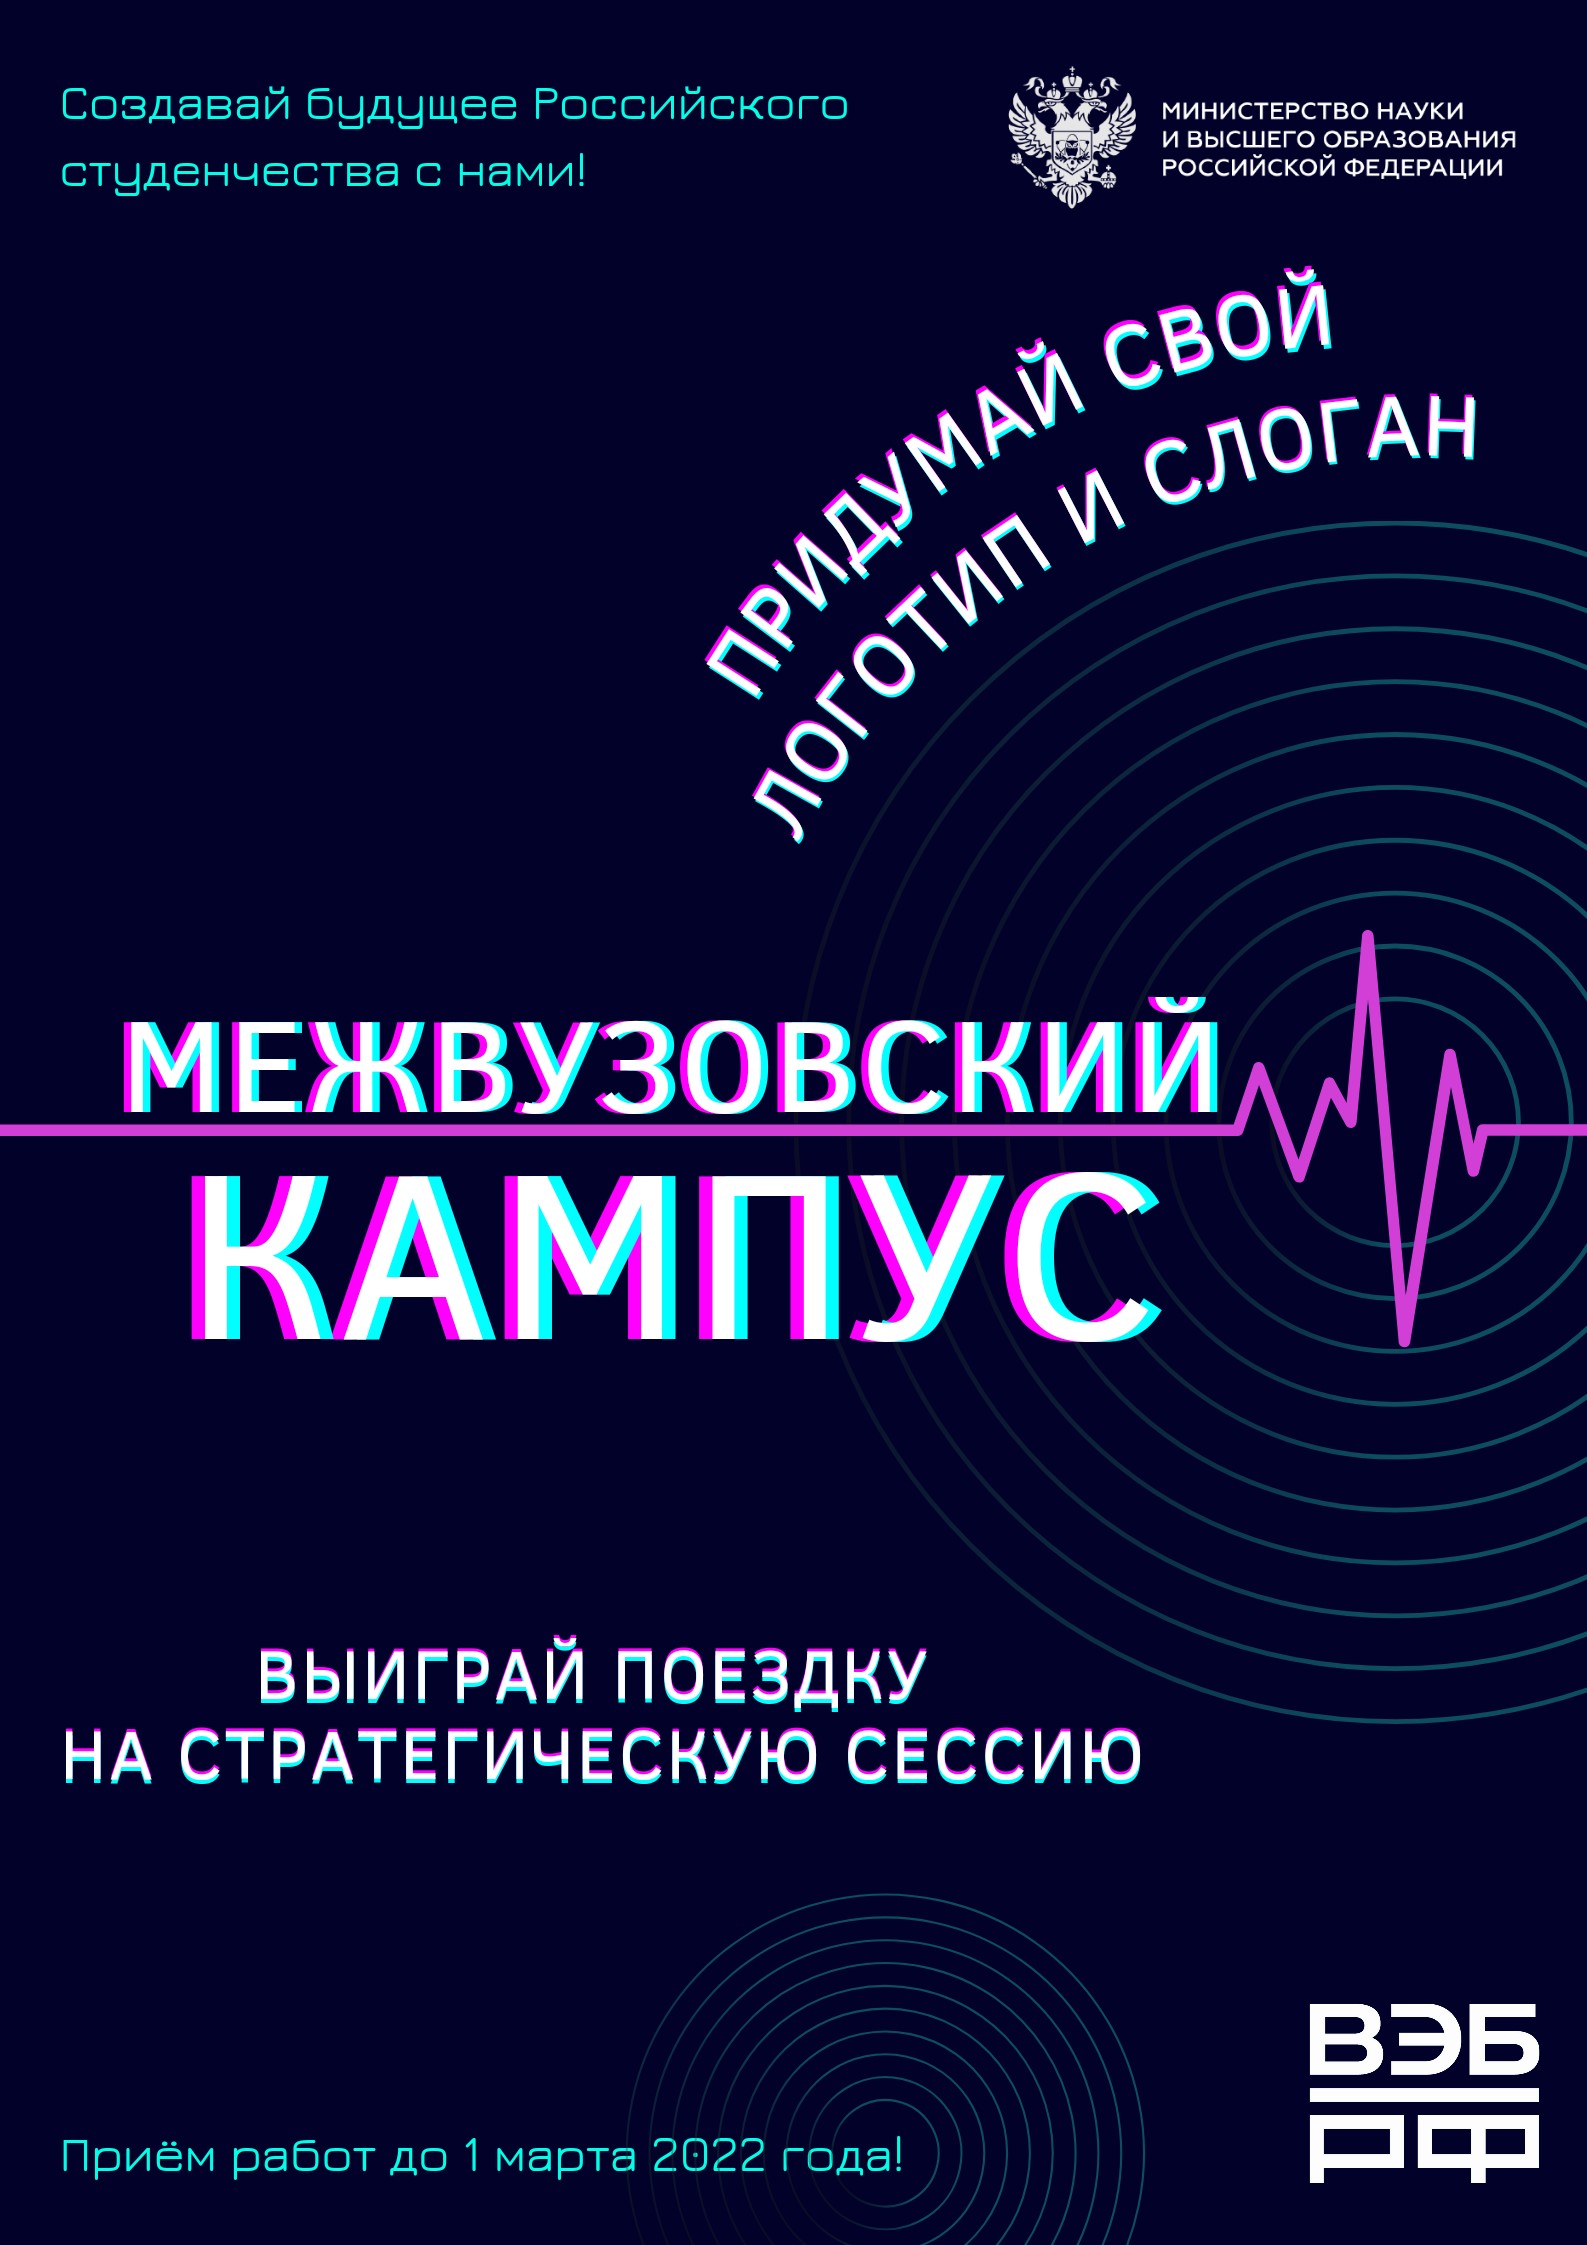 Объявляется конкурс на лучший логотип и слоган для Межвузовского студенческого кампуса